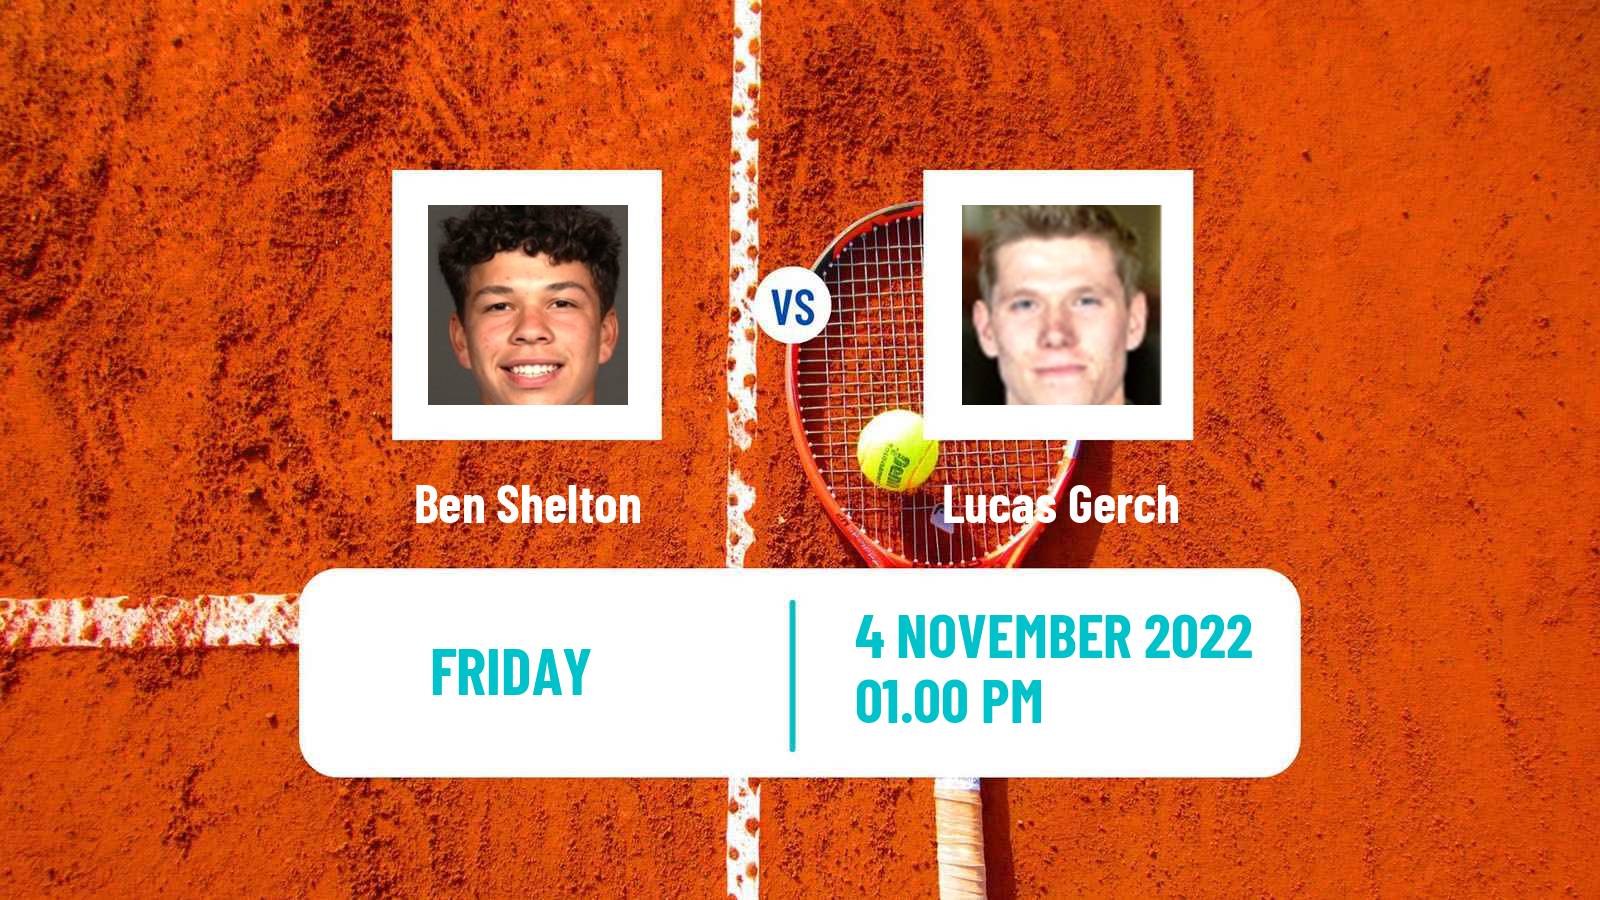 Tennis ATP Challenger Ben Shelton - Lucas Gerch